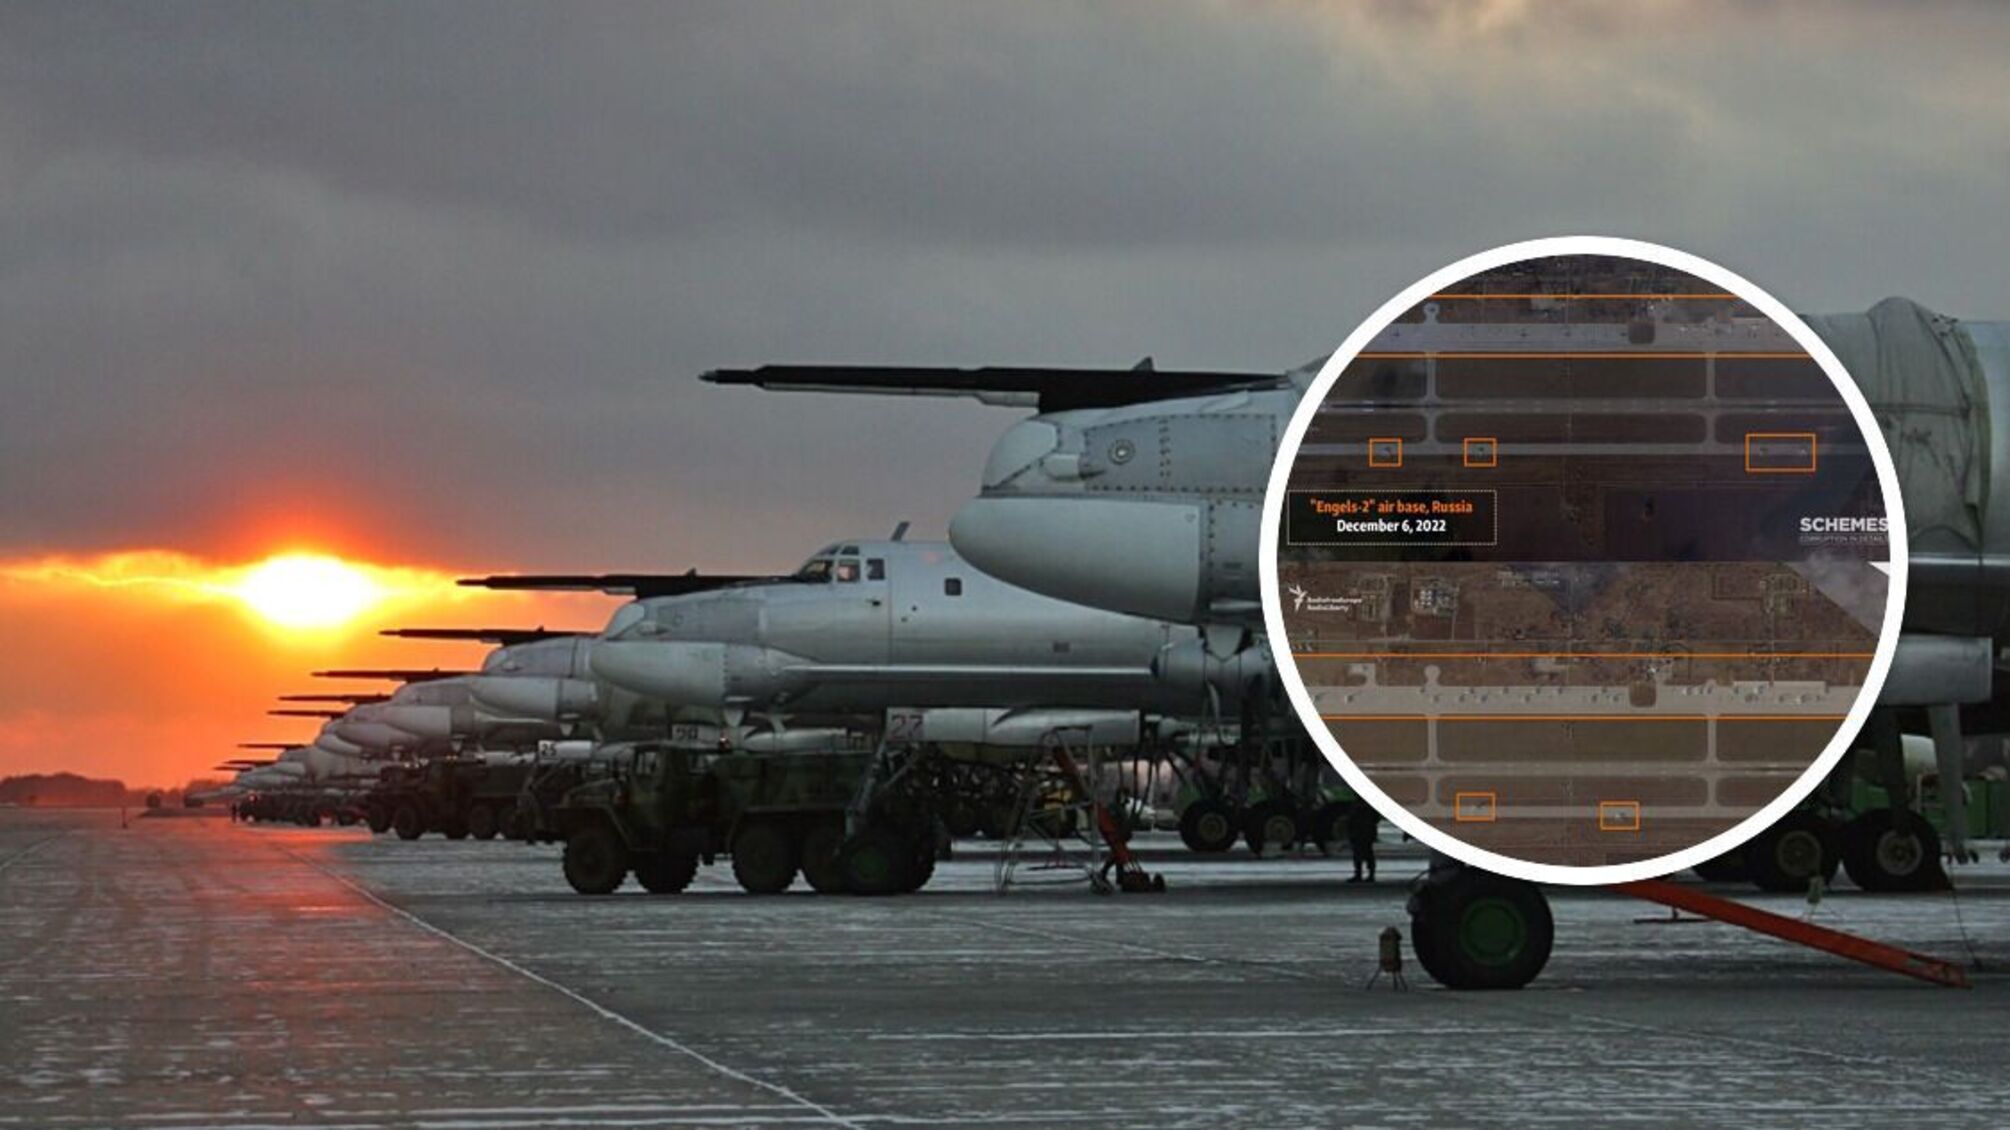 Новые фото авиабазы в Энгельсе: у Ту-95 погрызен нос, часть самолетов - 'мертвые'